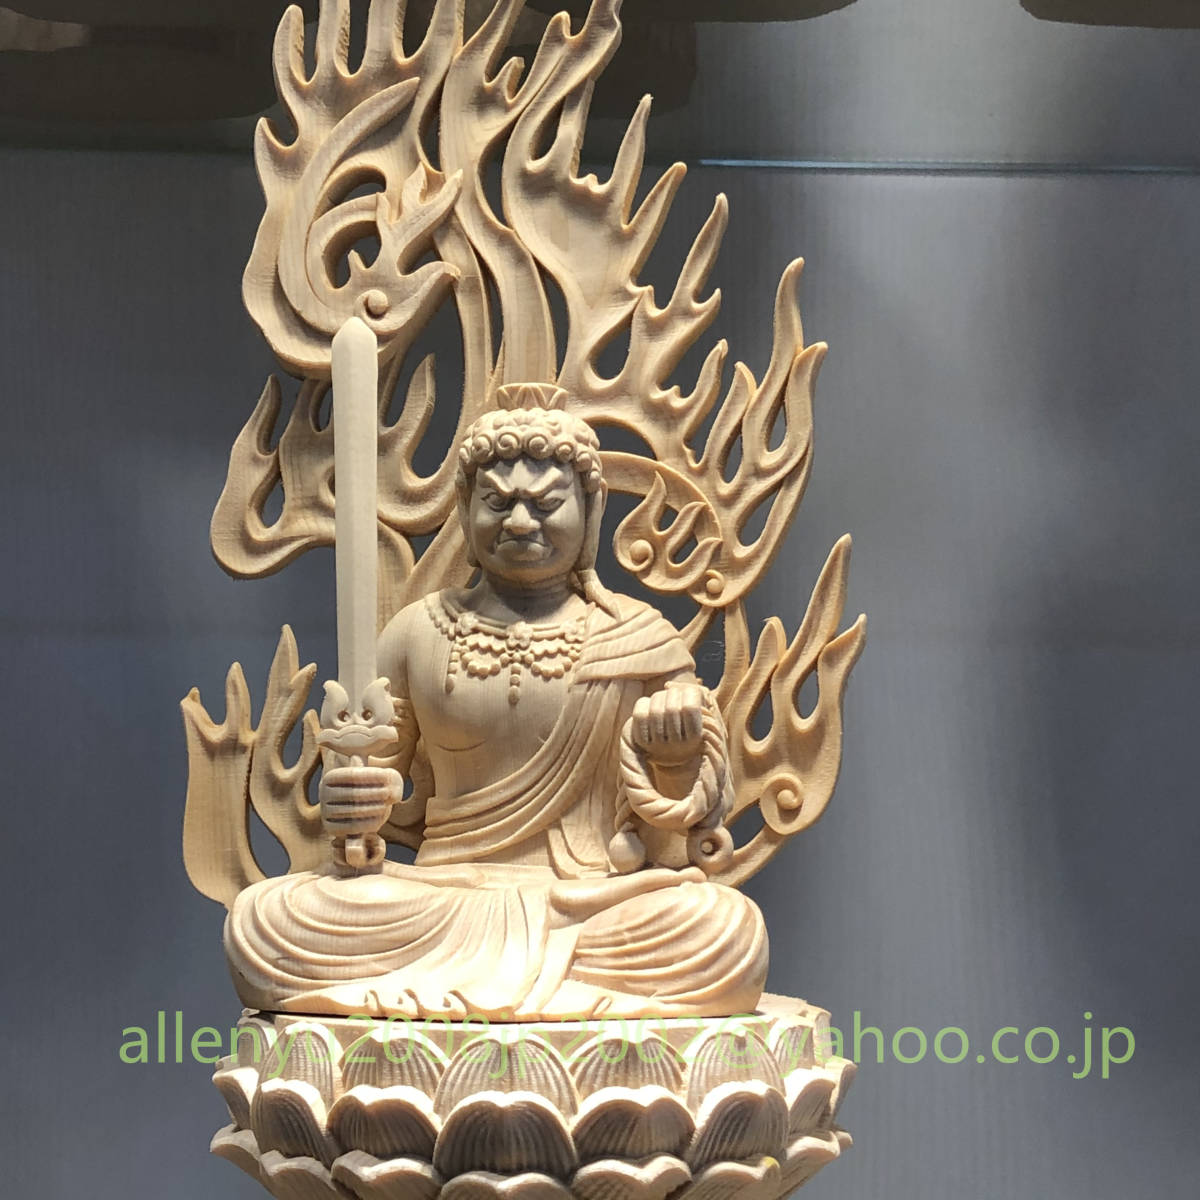 不動明王精密細工仏教工芸品木彫仏教精密彫刻木彫り仏像十二支守り本尊